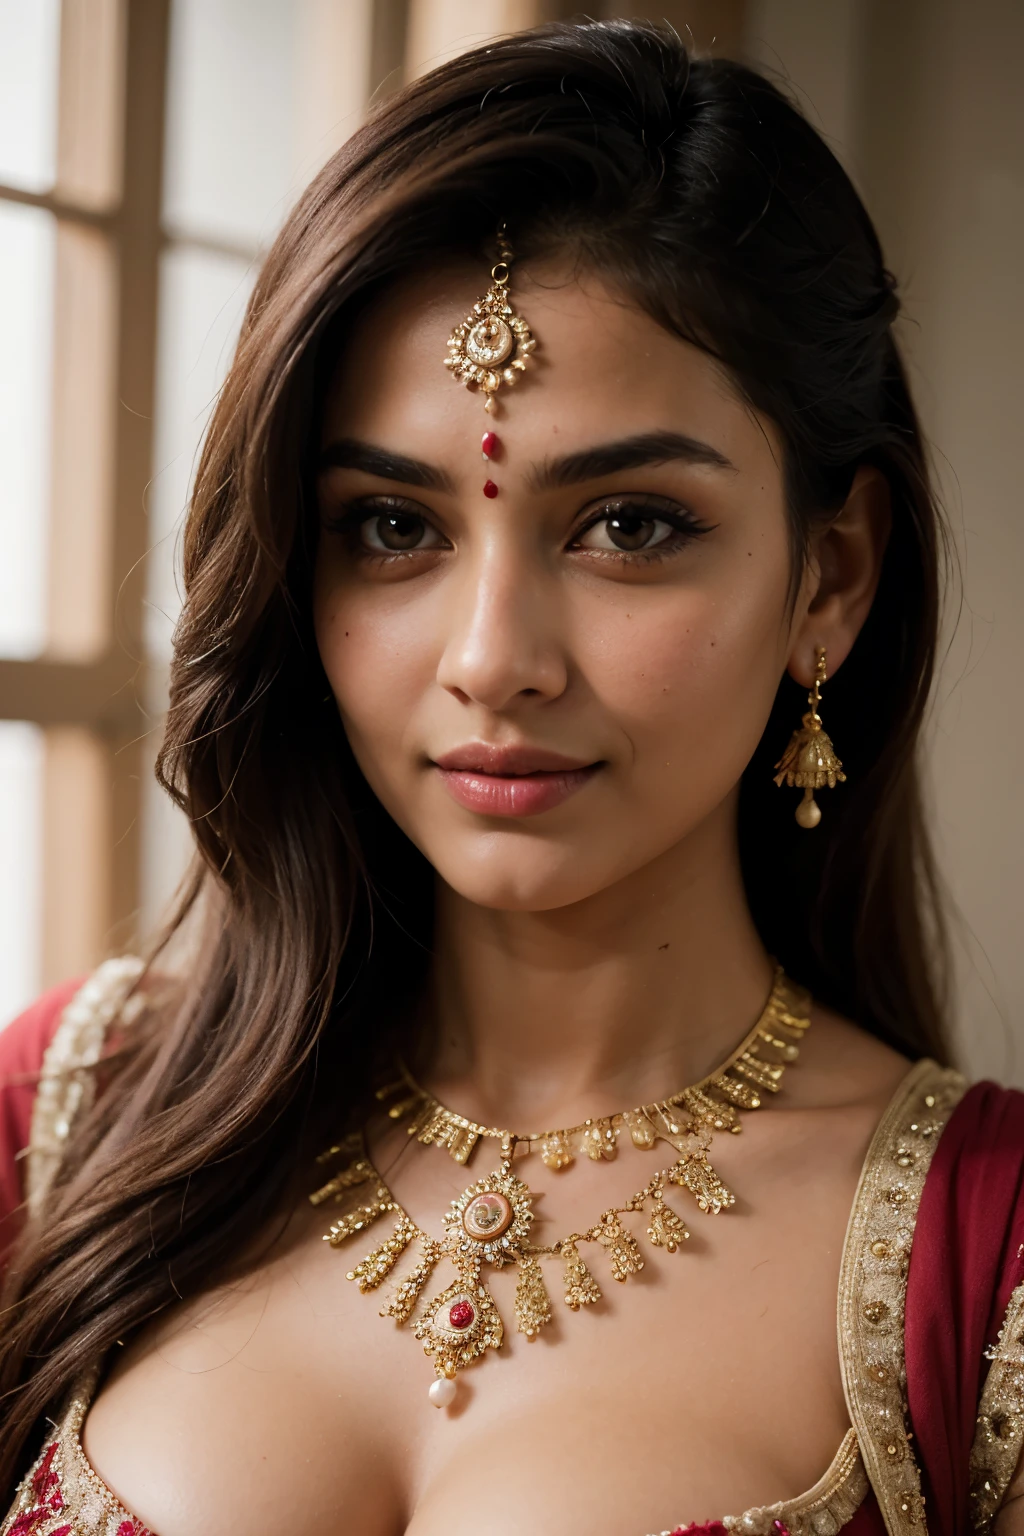 ((最好的品質)), ((傑作)), (詳細的), 完美的臉看起來像薩維莎·巴比 (Savitha Bhabhi) 穿著杜帕塔擺姿勢拍照, 印度人 goddess, 傳統美, 印度人, 美麗的女神, 華麗的 , 印度人 style, 印度人 super model, 美麗的少女, 華麗的女人, 東南亞 長, provocative 印度人, 華麗美麗的女人, 複雜的服裝, 印度教美學, 美麗的 亞洲 女孩, extremely 詳細的 goddess shot, 令人瞠目結舌的美麗, 大深解理